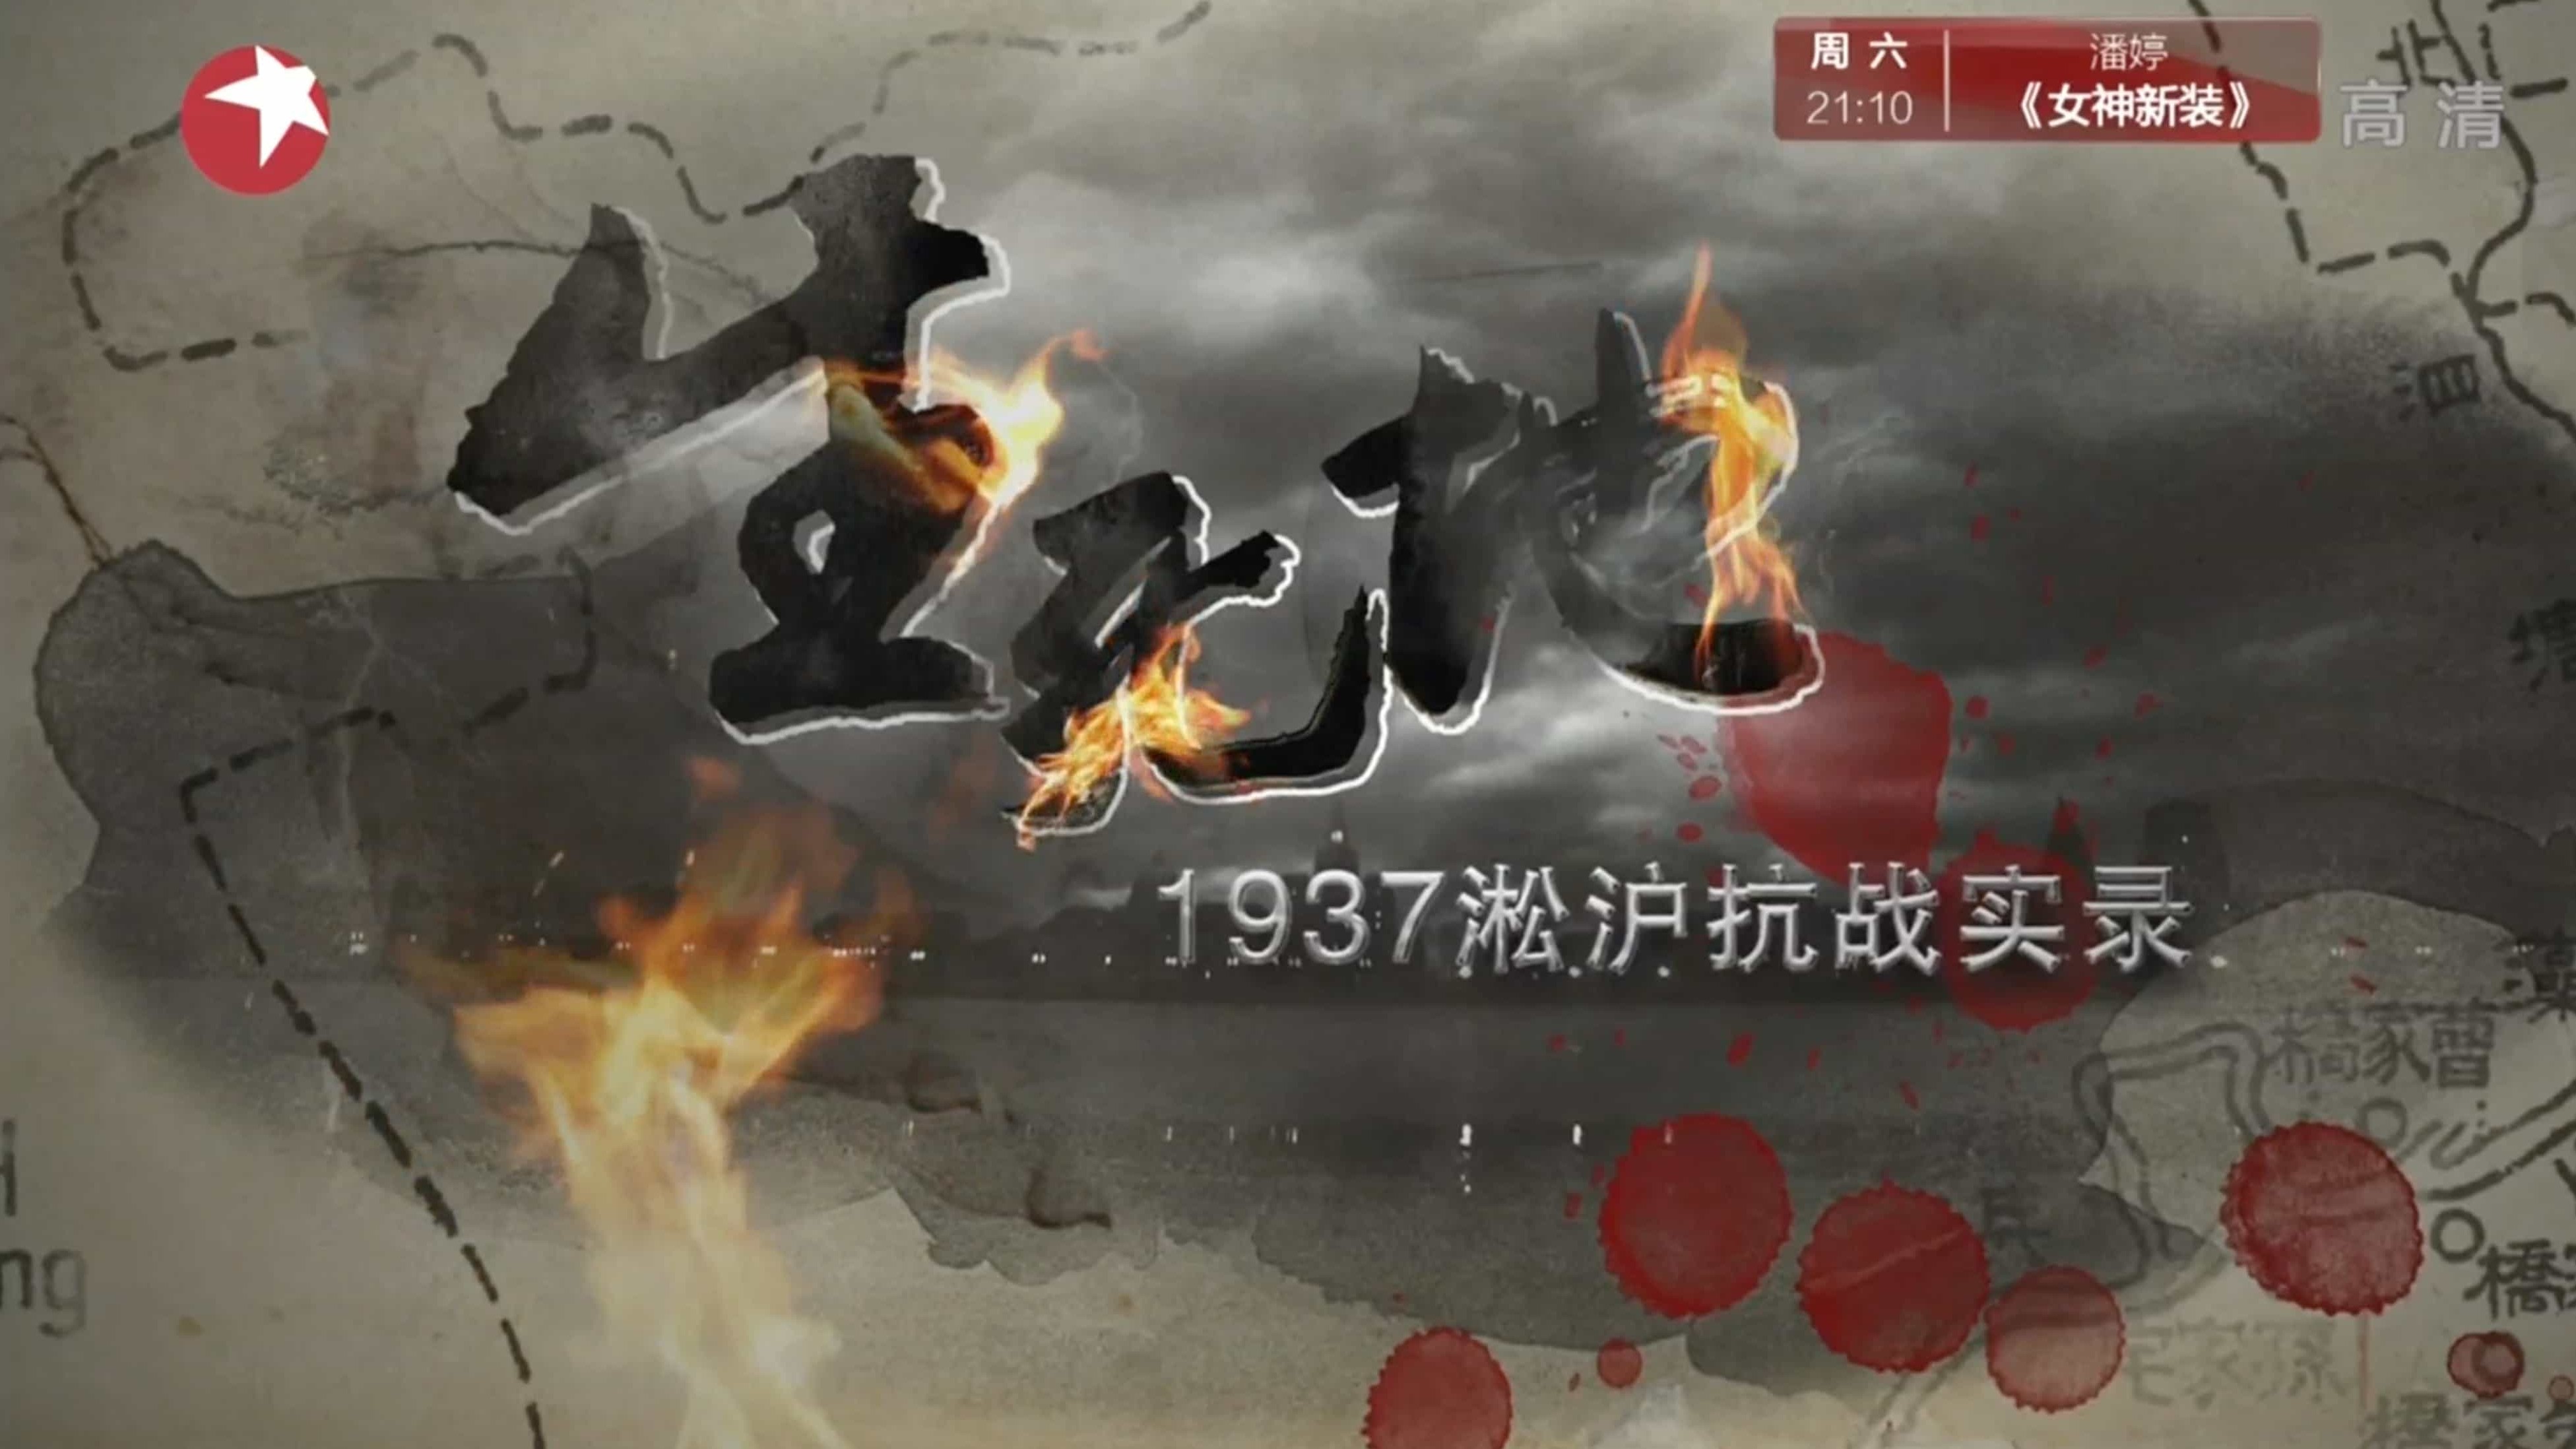 大型抗战历史文献纪录片《生死地—1937淞沪抗战实录》全4集 汉语中字 1080P